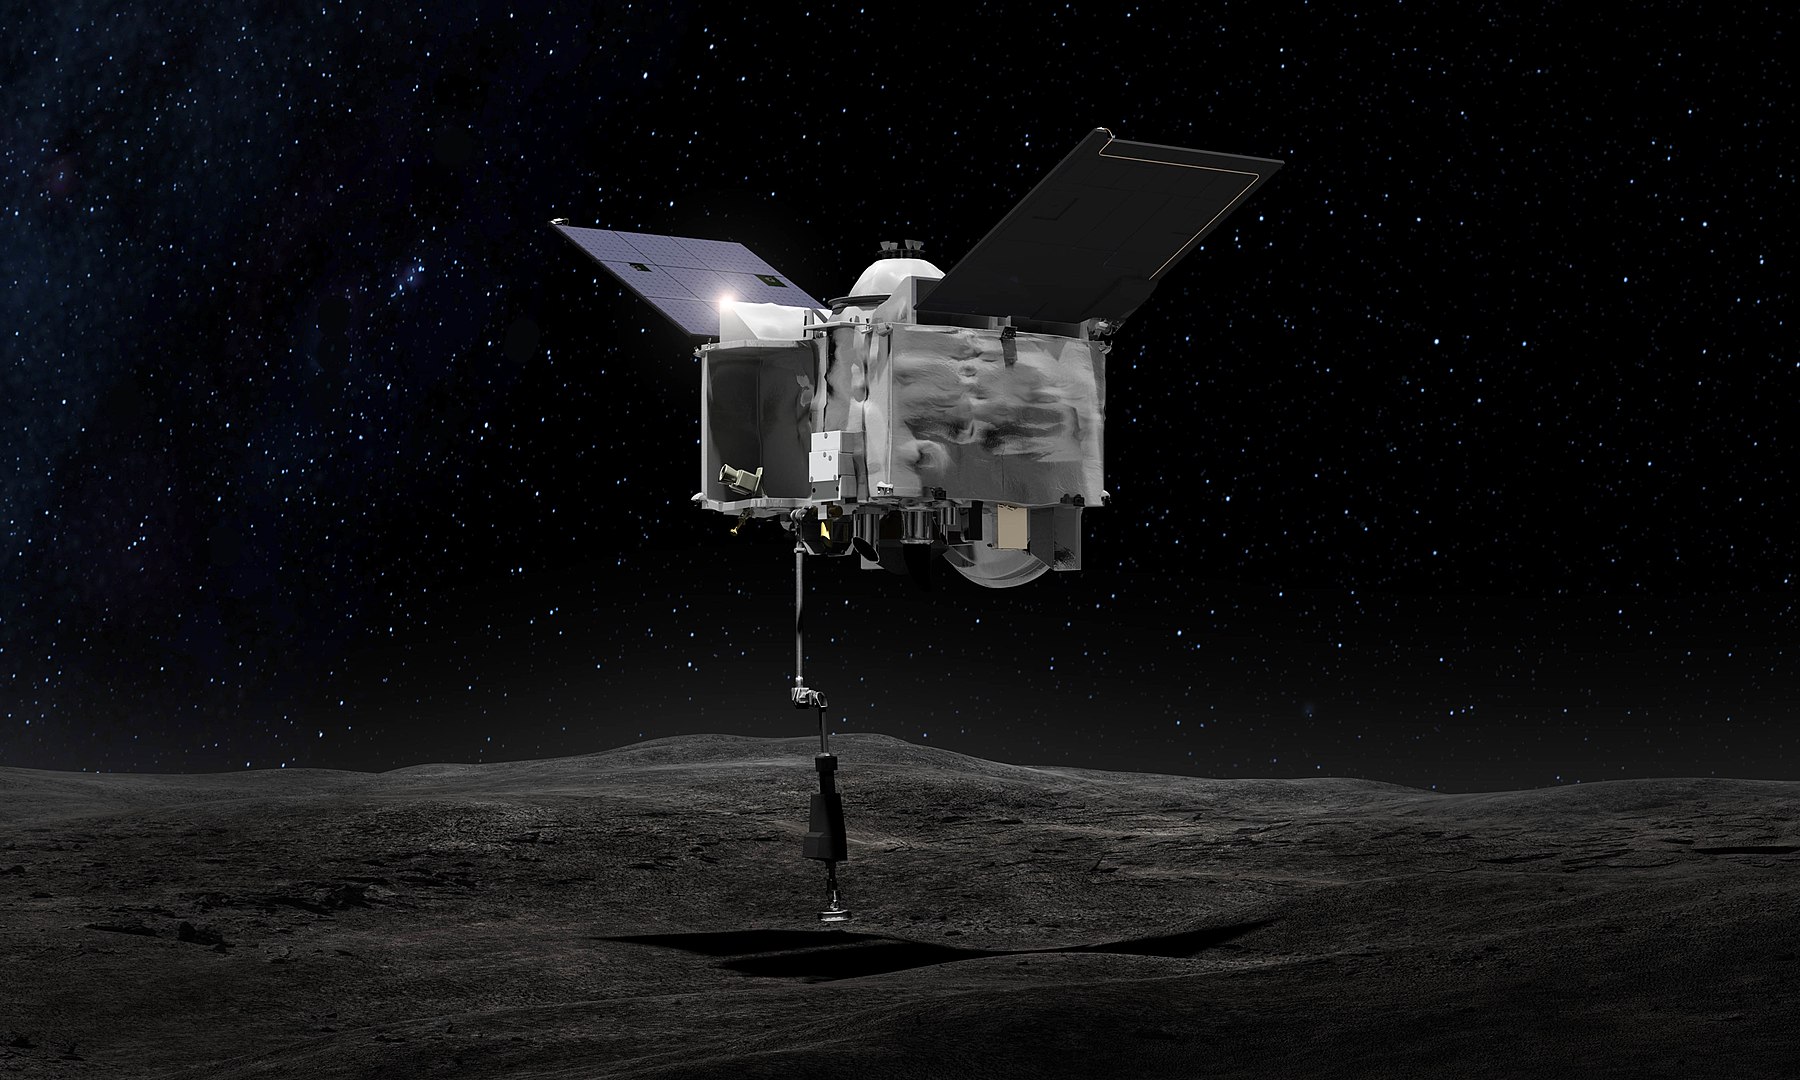 La sonde OSIRIS-REx a (probablement) capturé plus de 60 grammes de gravats de l'astéroïde Bennu